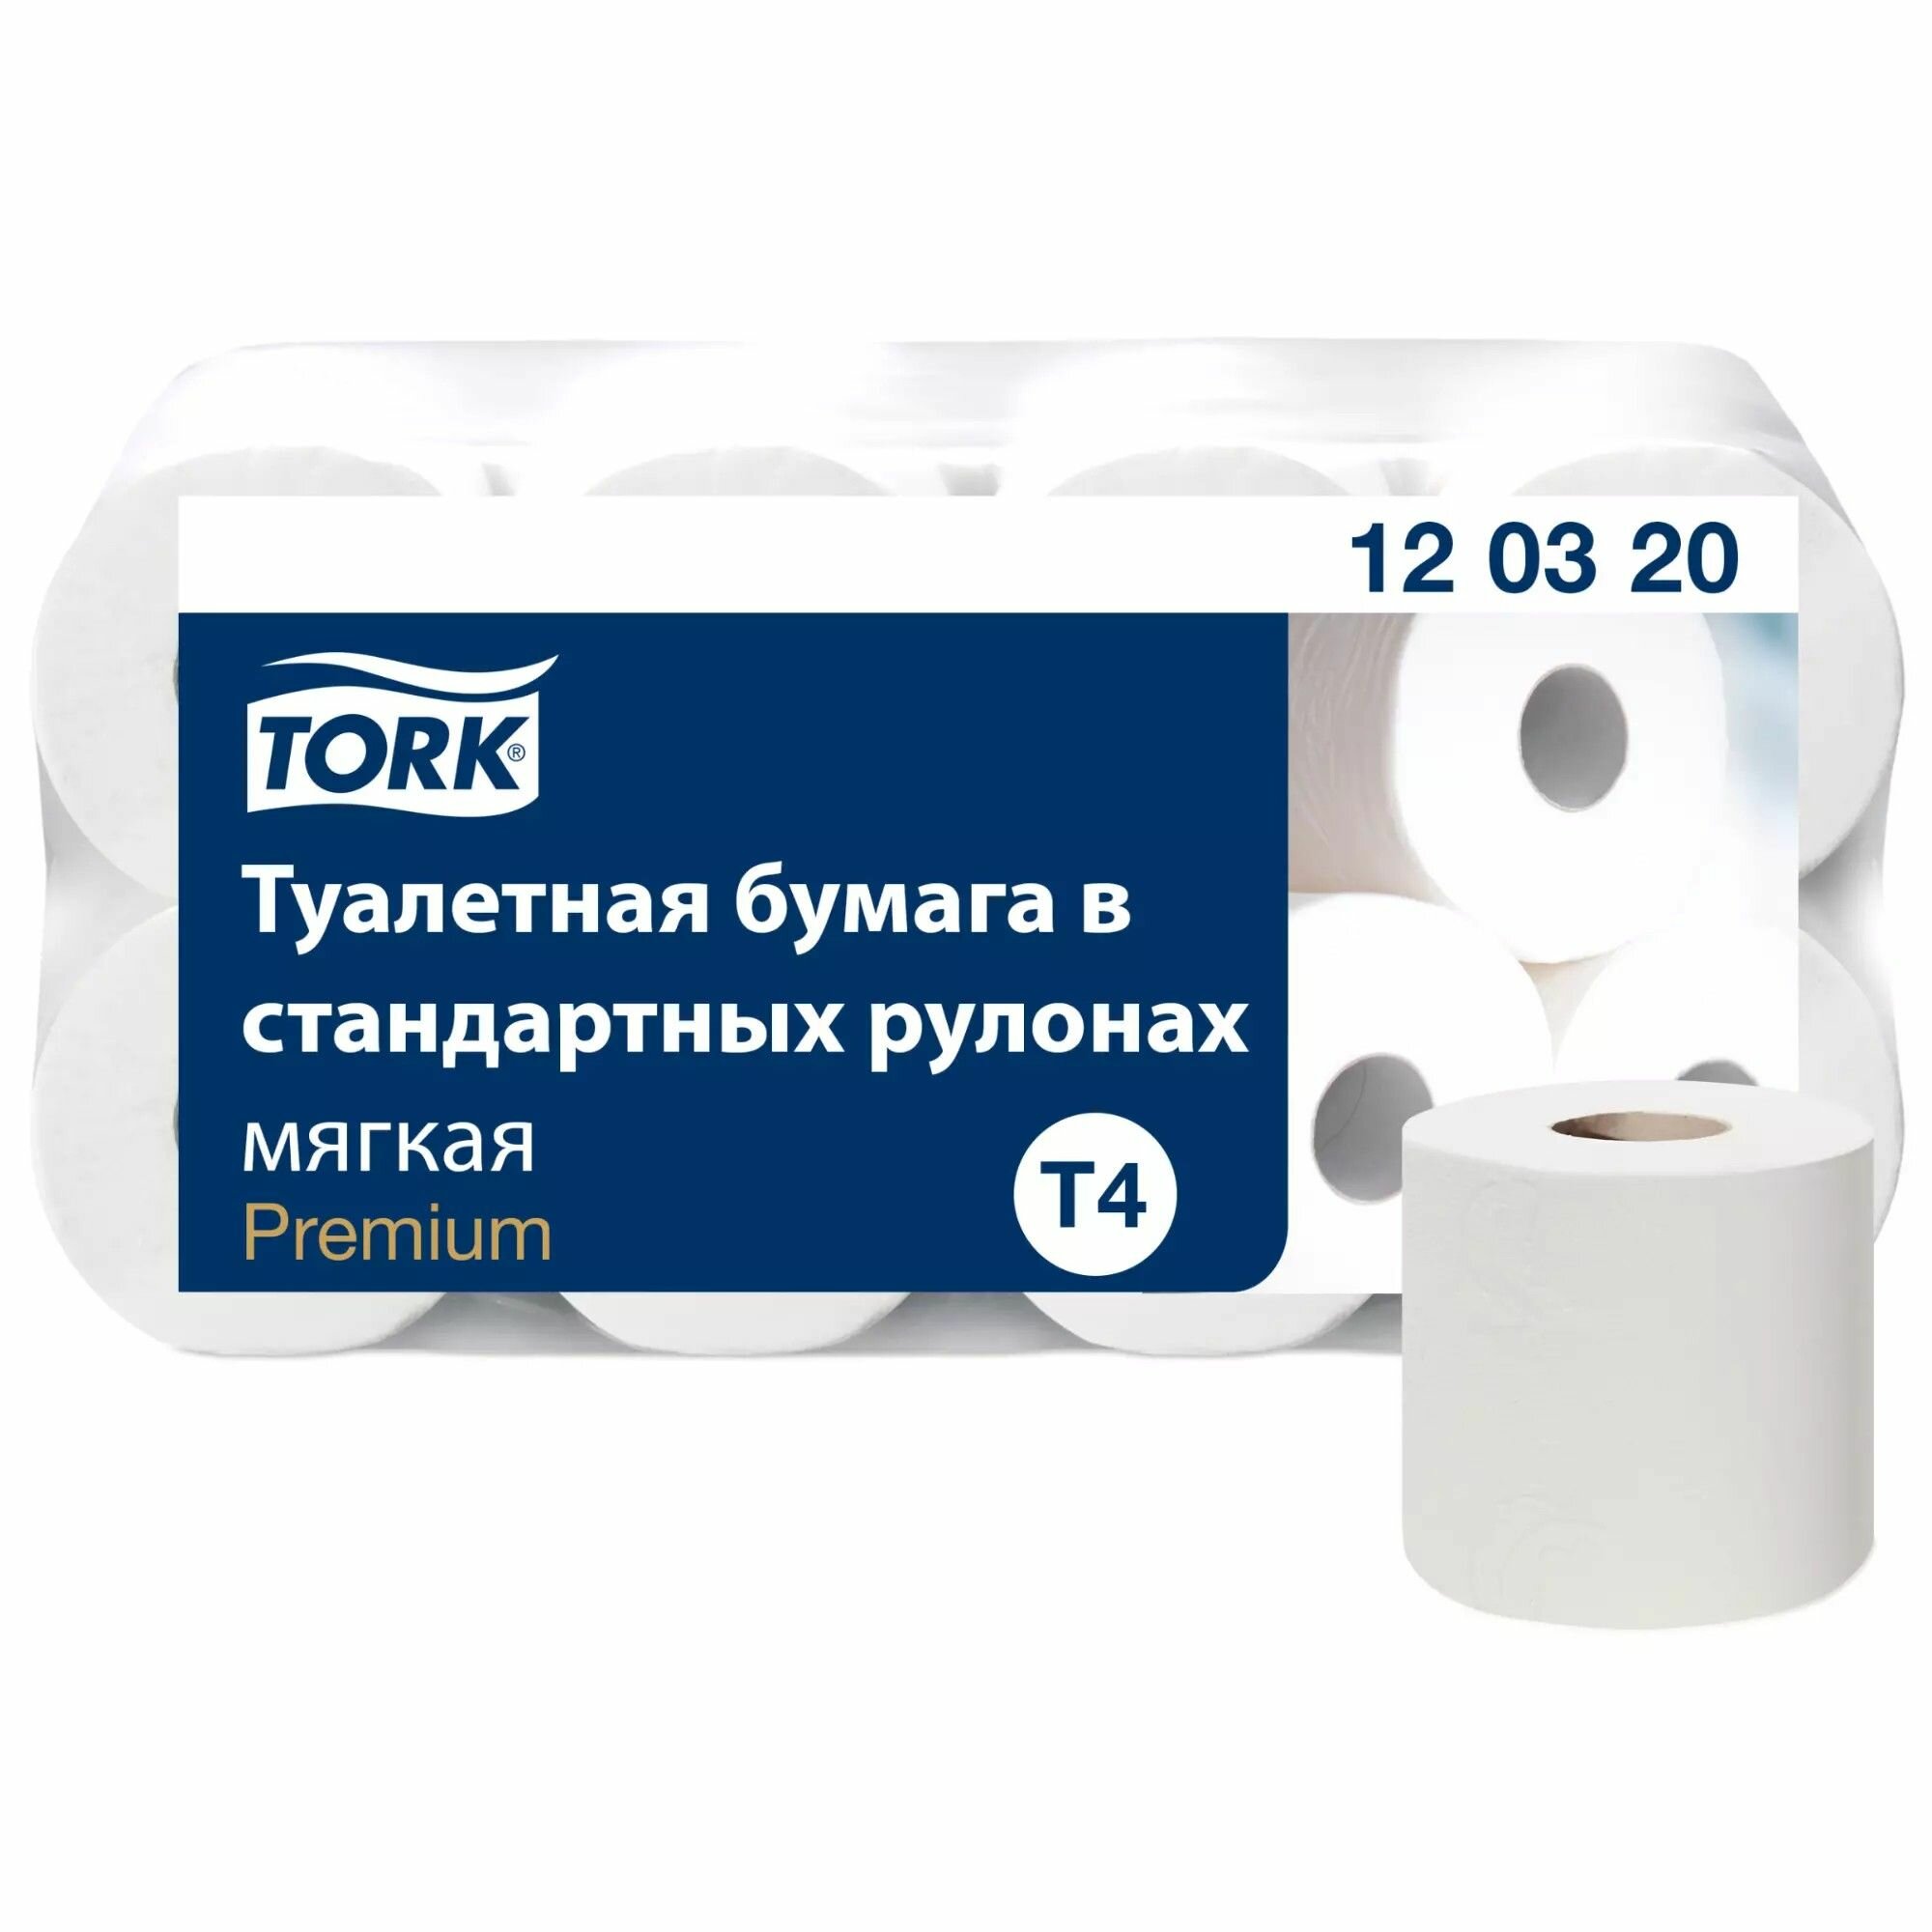 Туалетная бумага Tork Premium в рулоне мягкая система T4 23 м 2 сл. белая 1 рулон (арт: 120320)